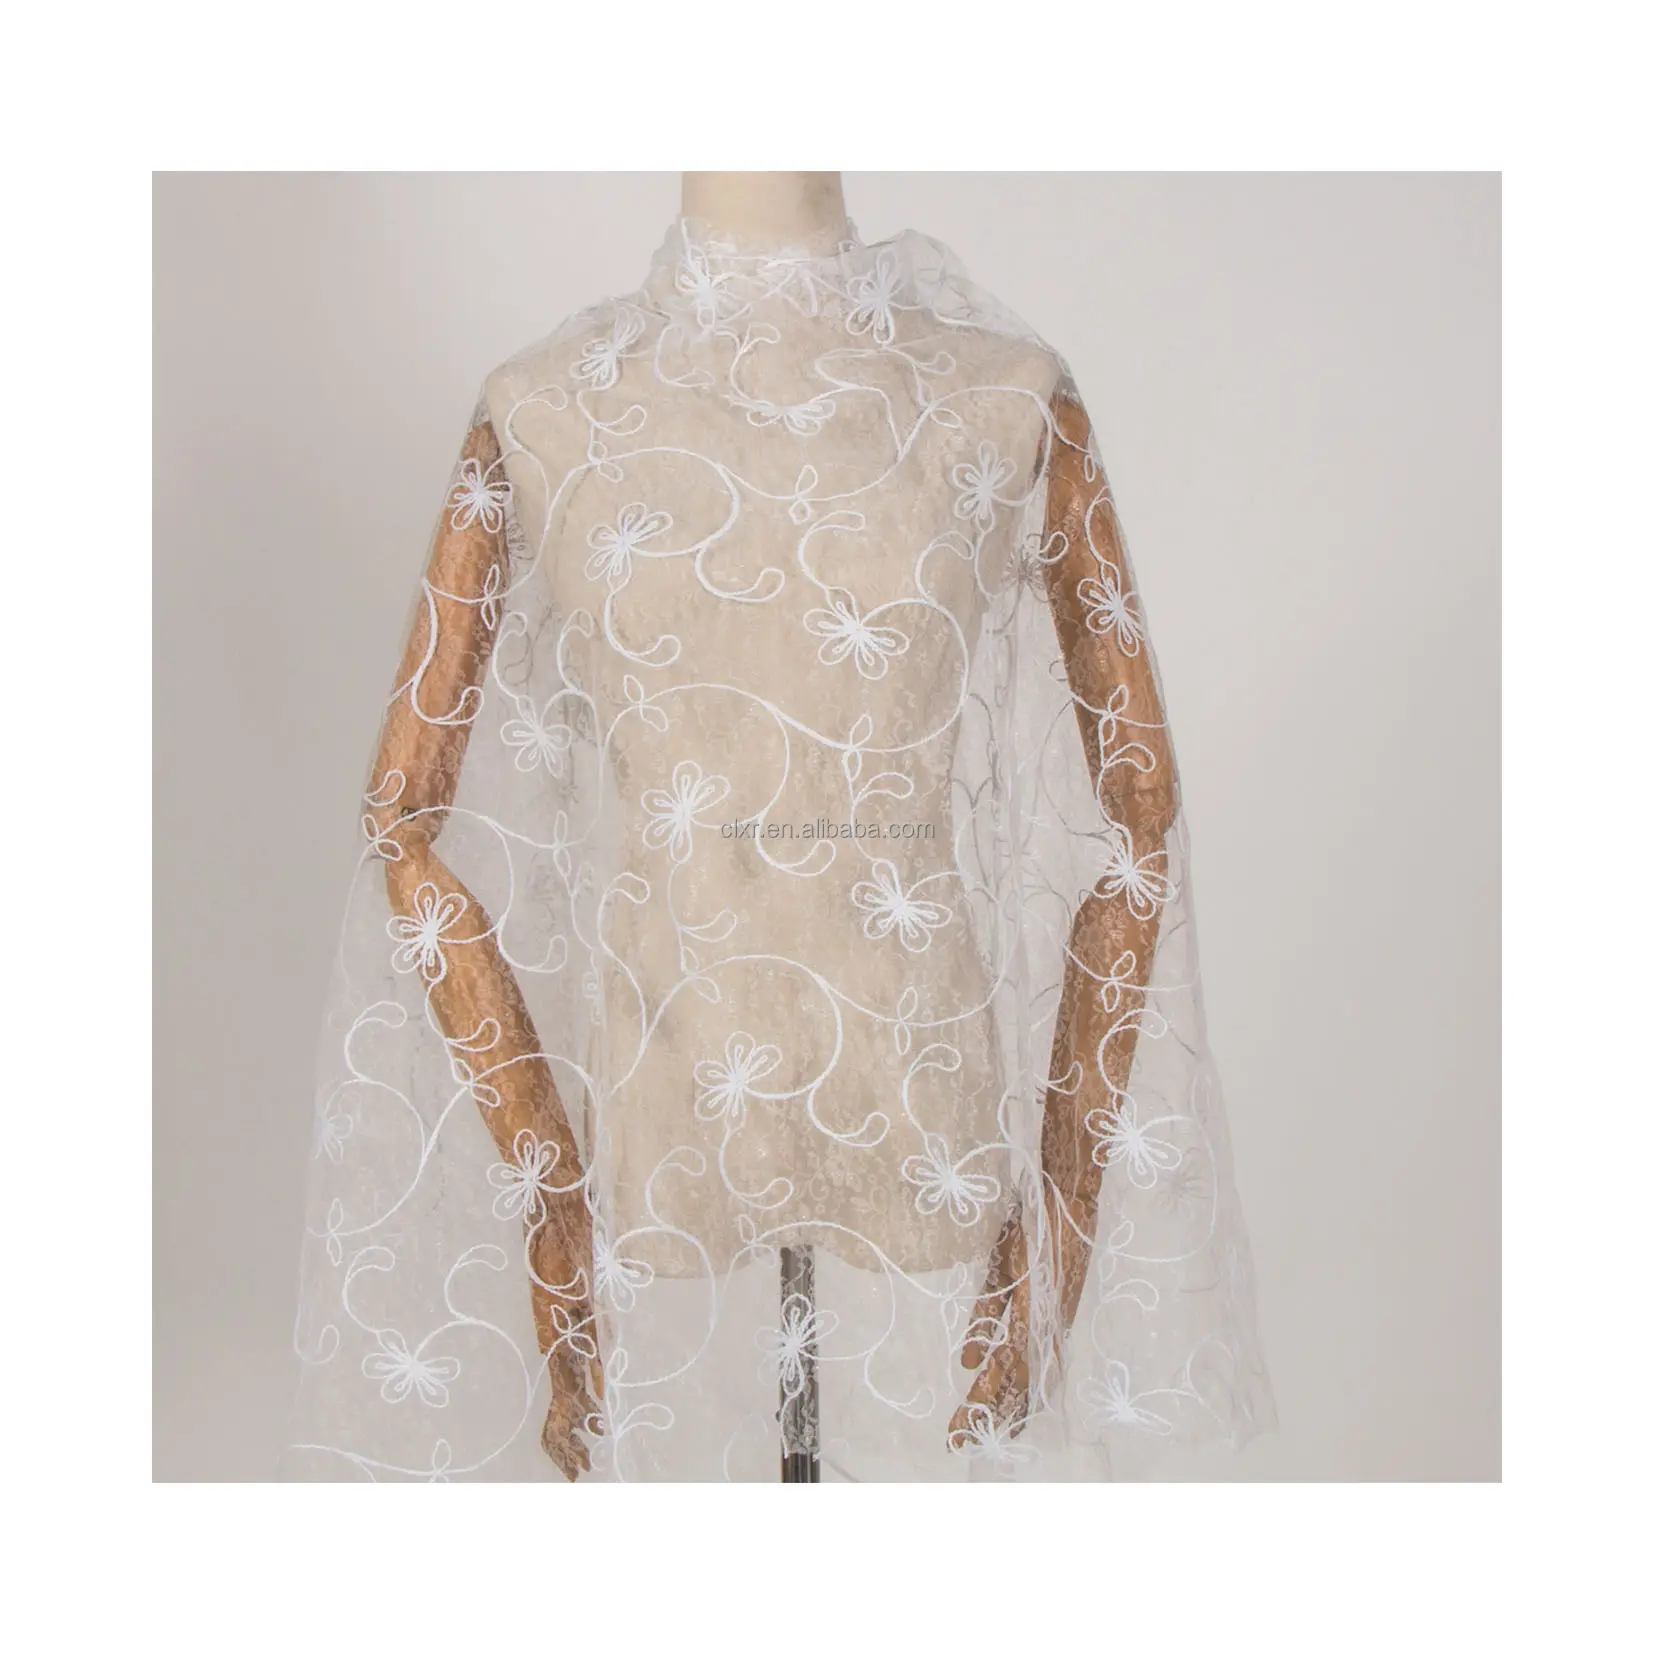 ウェディングイブニングドレス用中国チュールファクトリーフレンチレースハイエンド刺繍ホワイトパターン生地